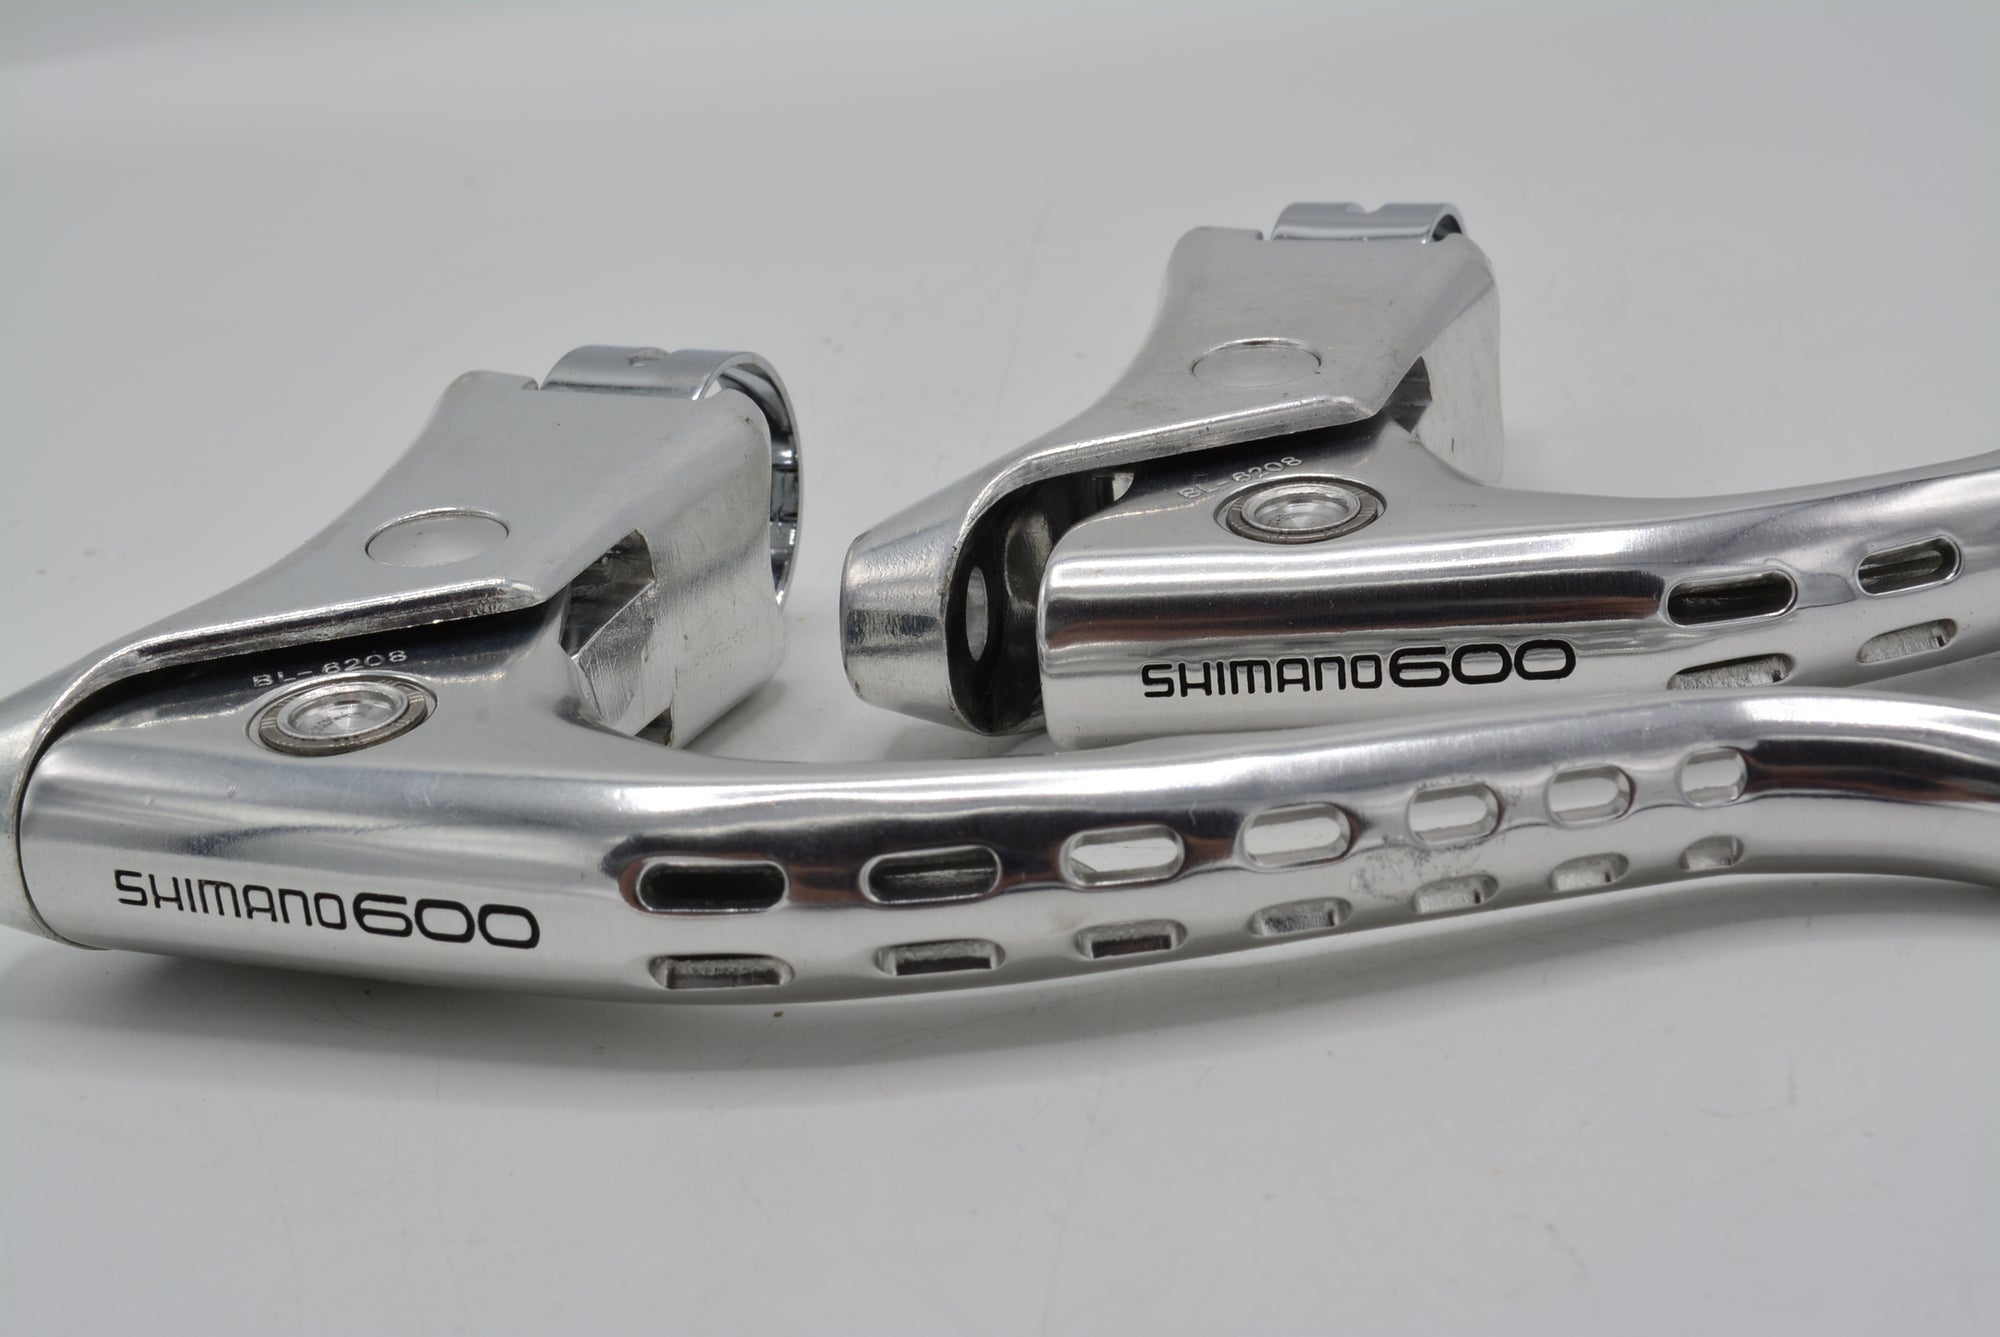 Shimano 600 Bremshebel Set BL-6208 NOS